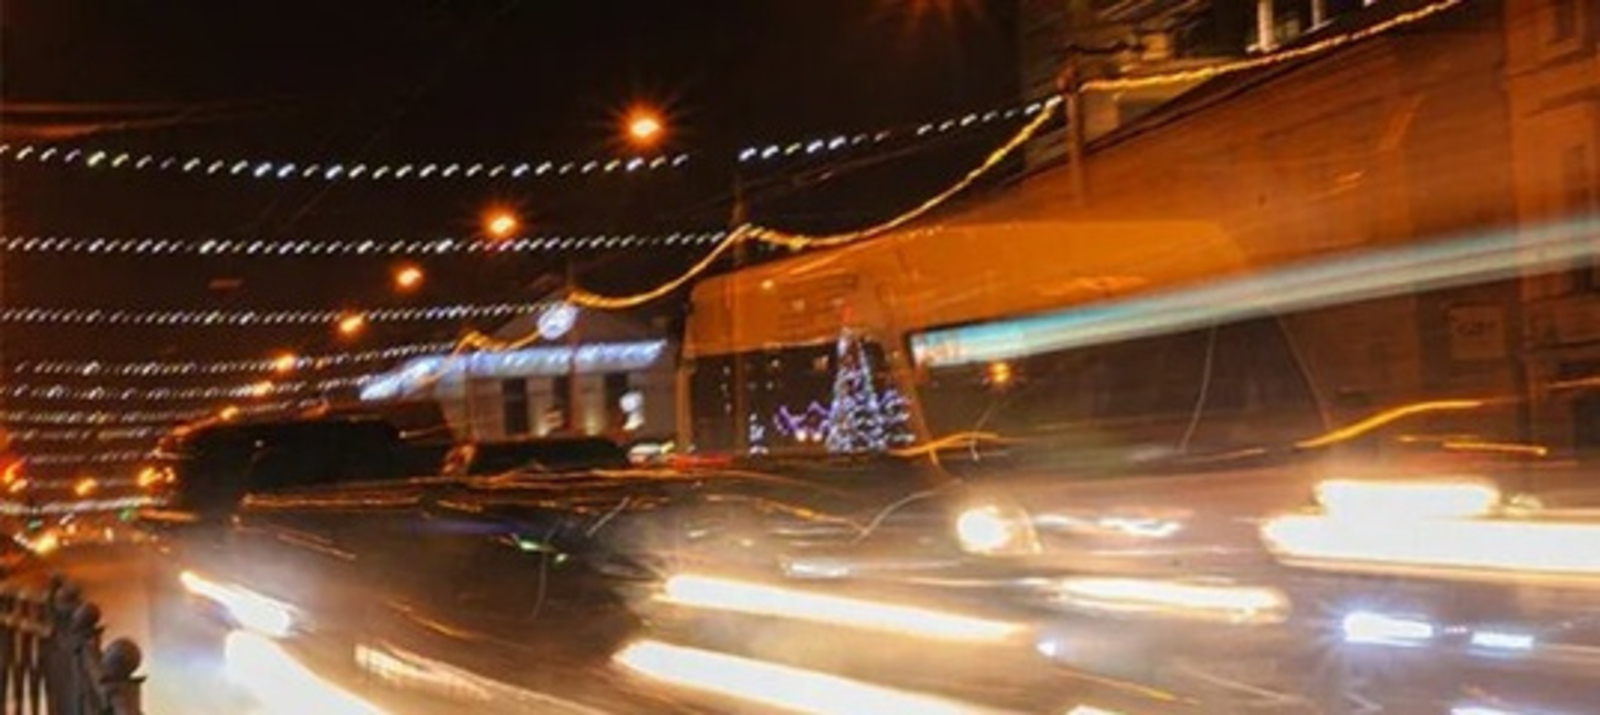 Автомобильное топливо подорожало в Башкирии из-за ремонта на заводах